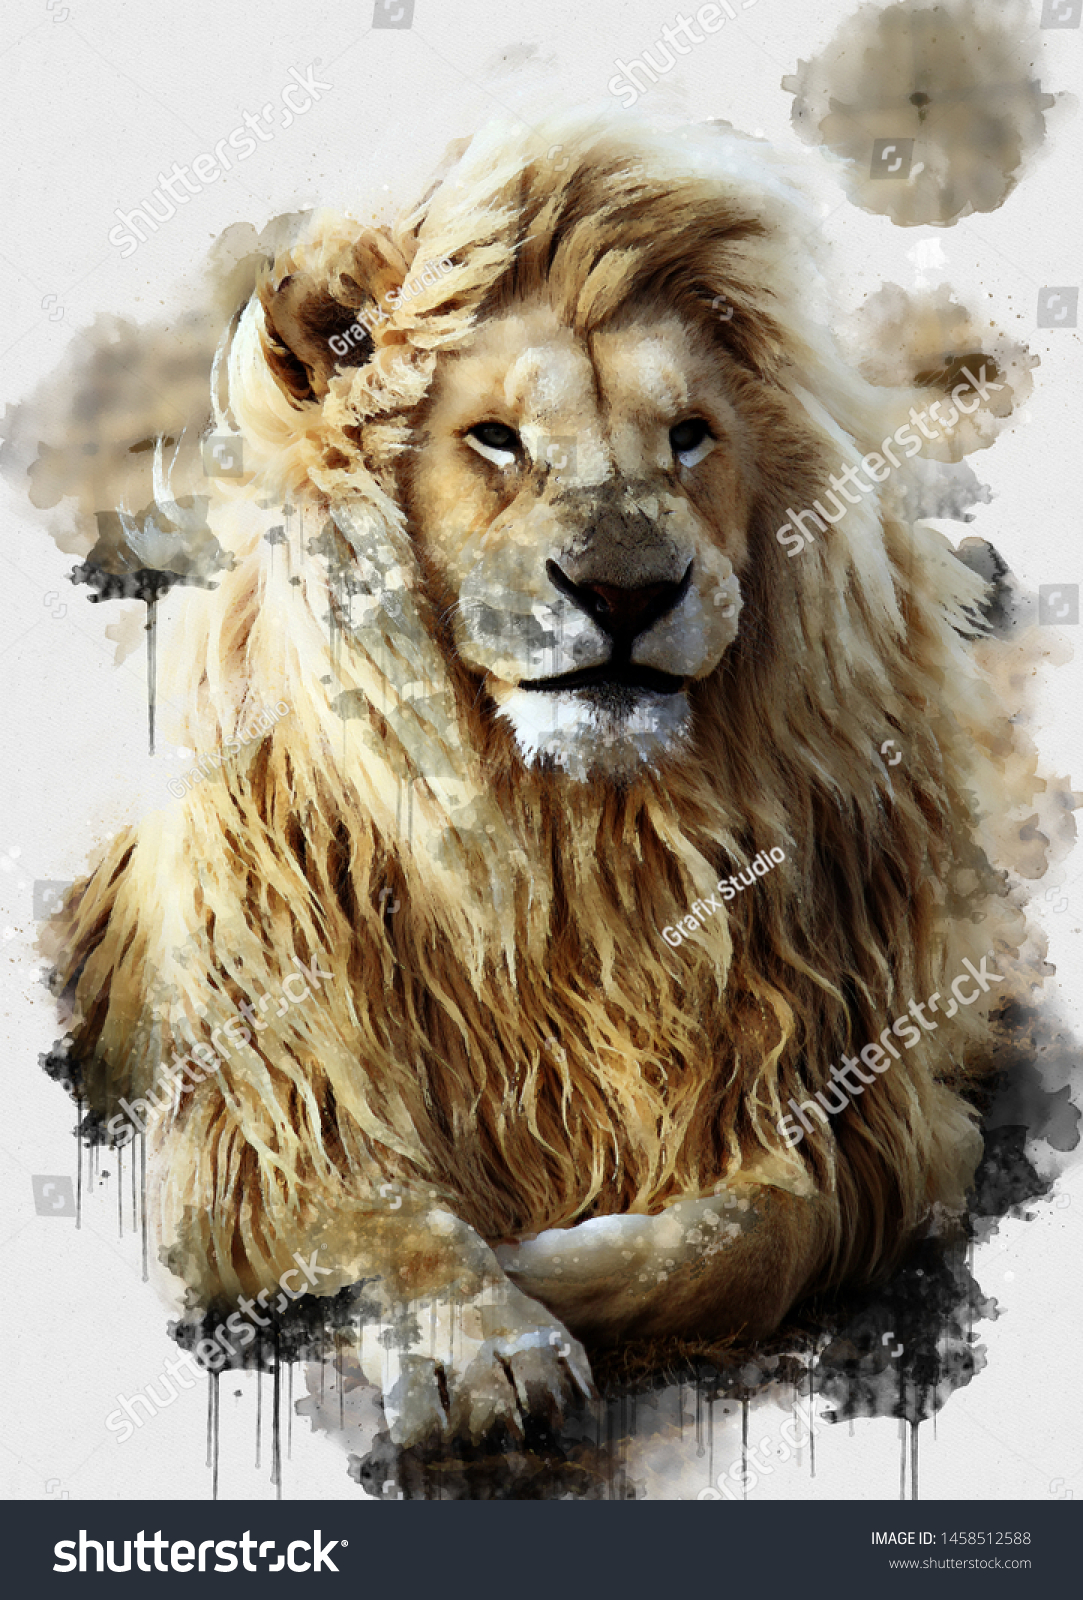 獅子水彩デジタル画 デジタルアート 暖かい日にくつろぐライオンの王様の美しい画像を描いた デジタル水彩画 茶色のライオンの絵 抽象的な動物の壁紙 の イラスト素材